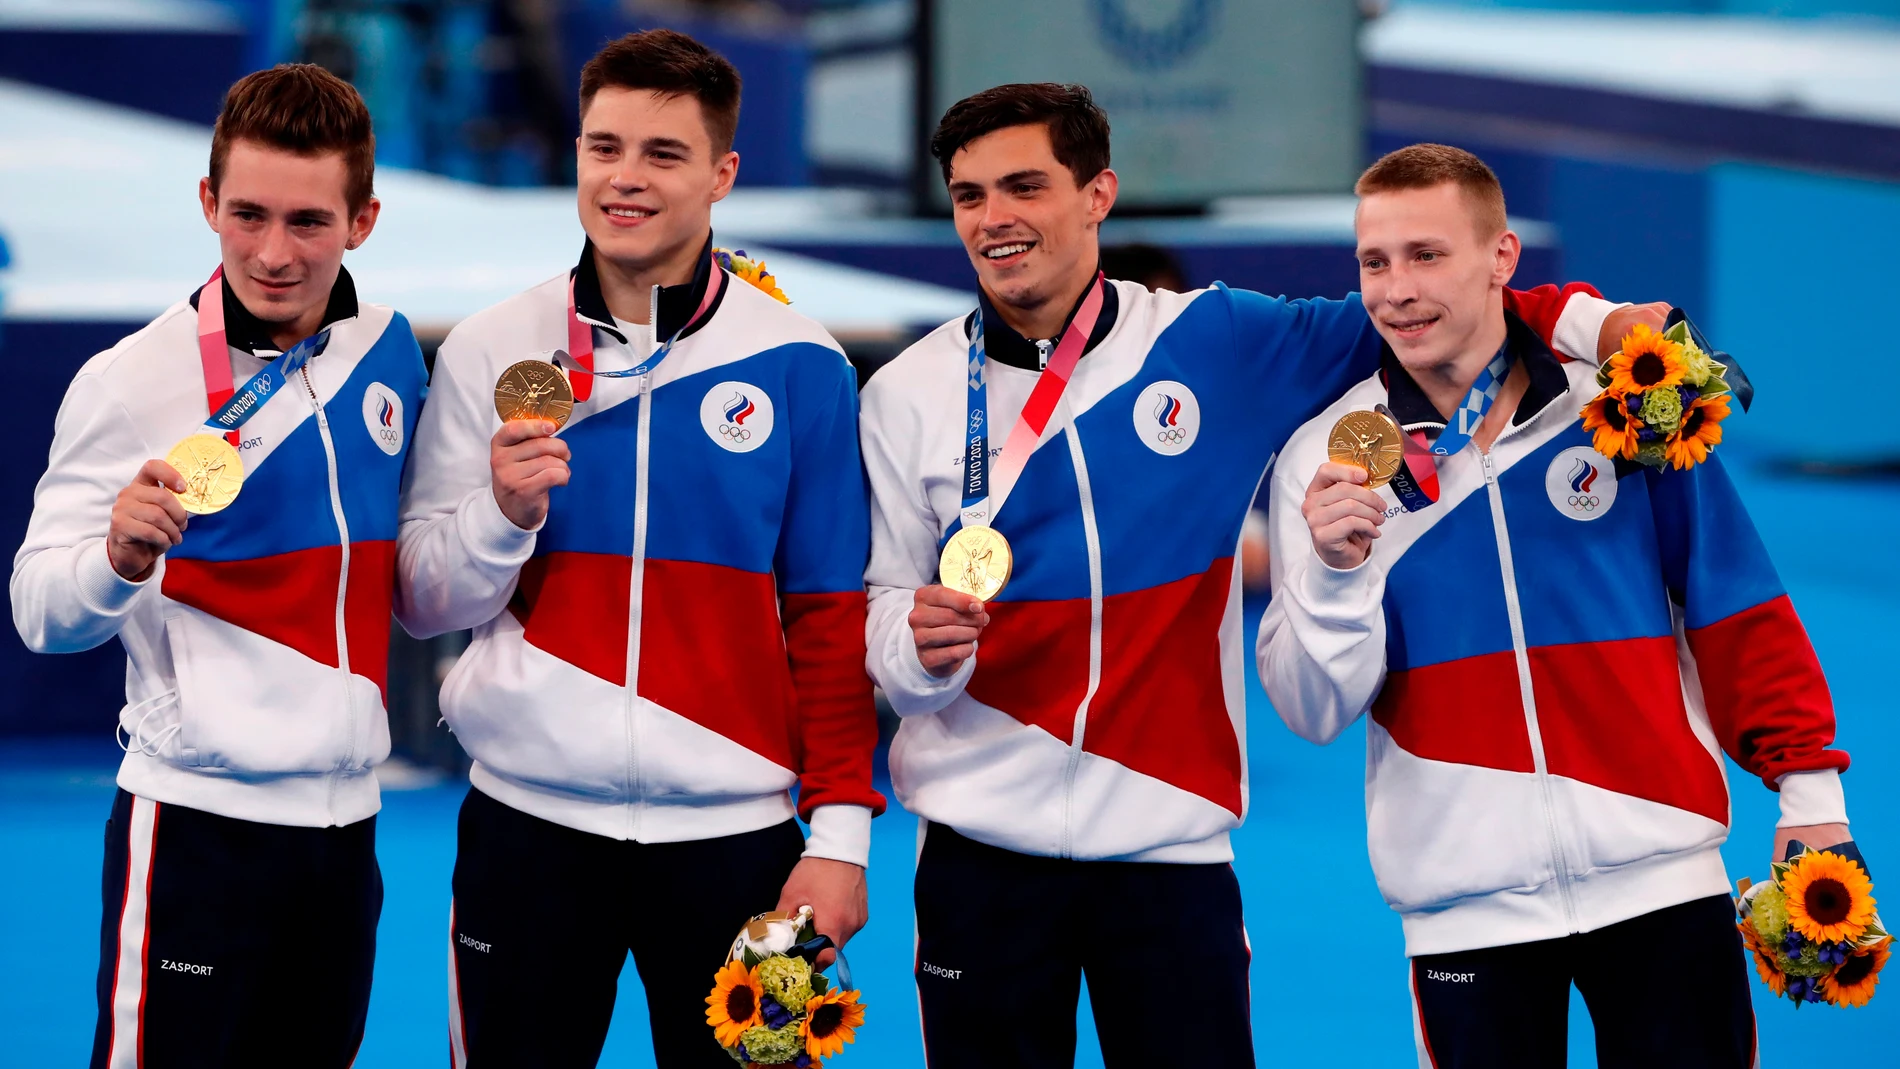 El equipo de gimnastas de Rusia, (David Belyavskiy, Nikita Nagornyy, Artur Dalaloyan, Denis Abliazin) posa tras ganar el oro